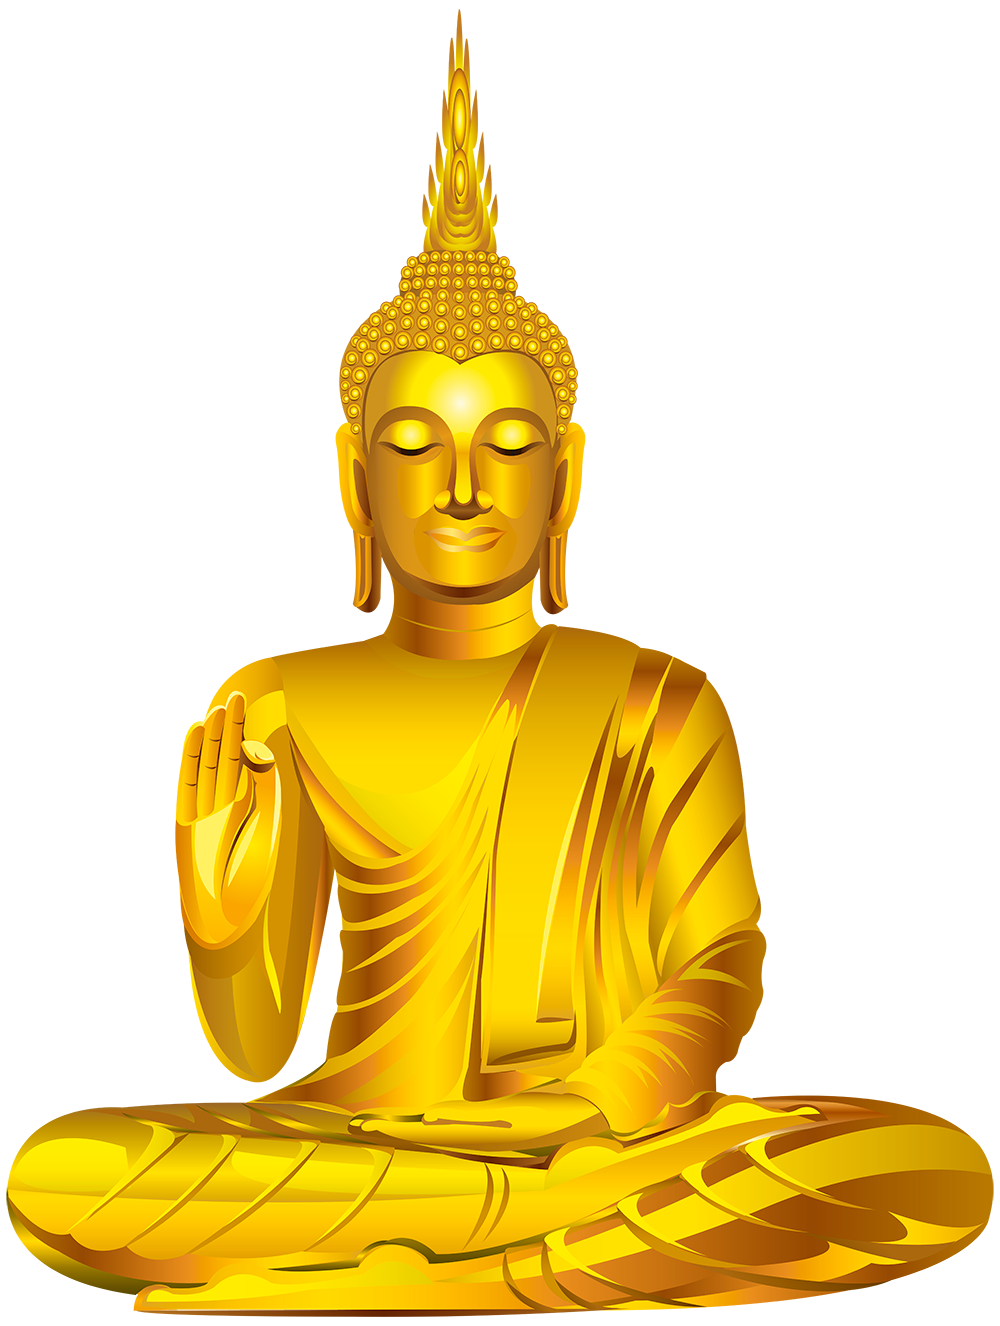 가타마 부처님 동상 투명 한 본체